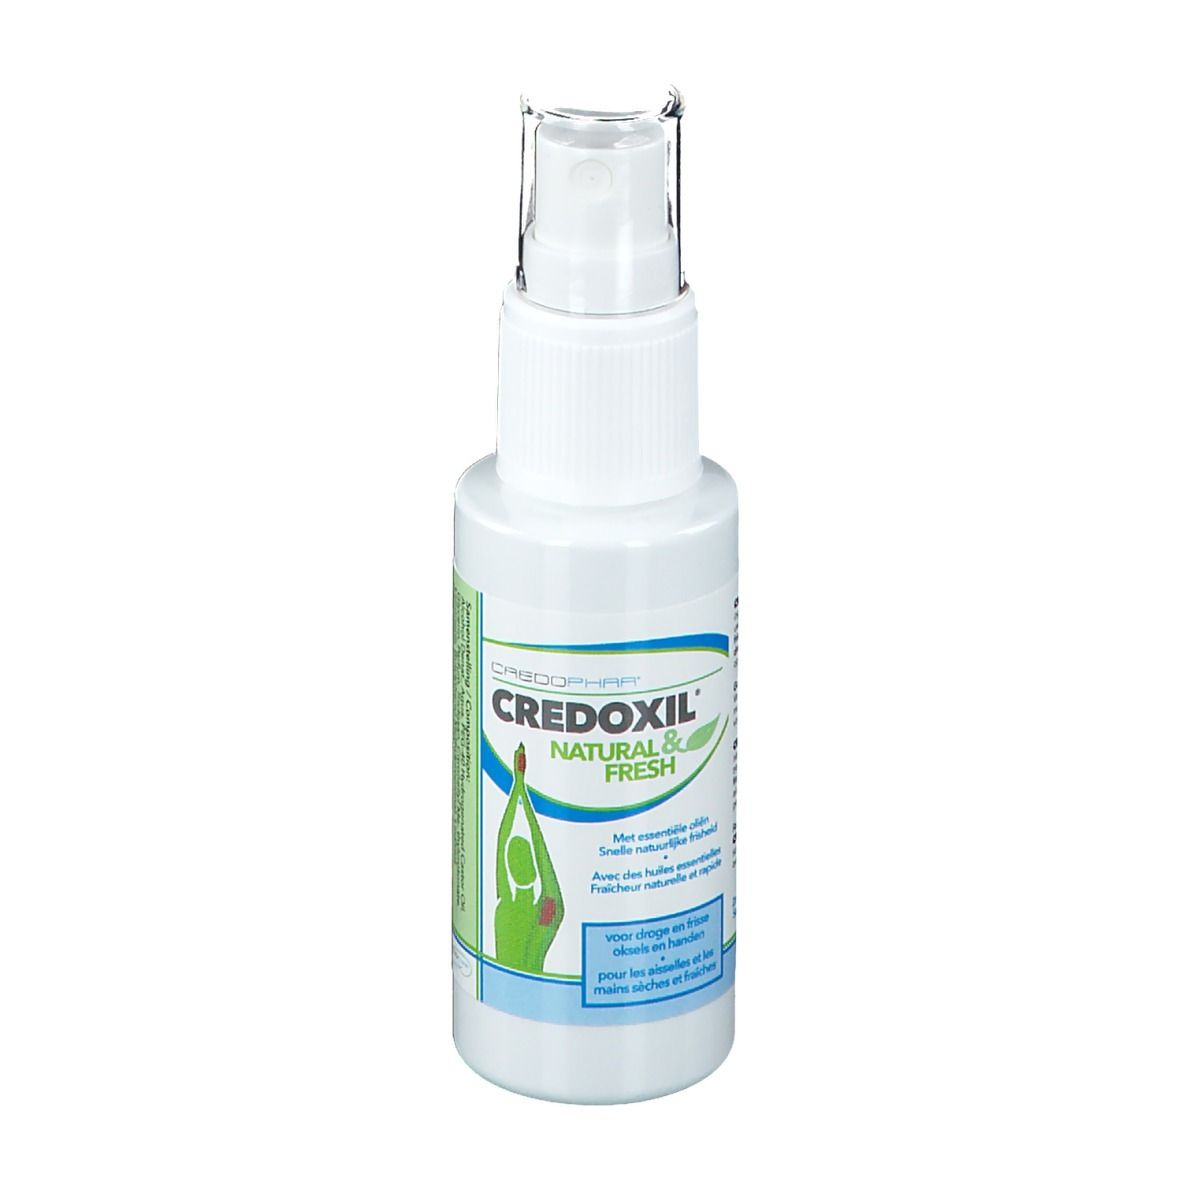 Credophar Credoxil® Natural & Fresh Spray